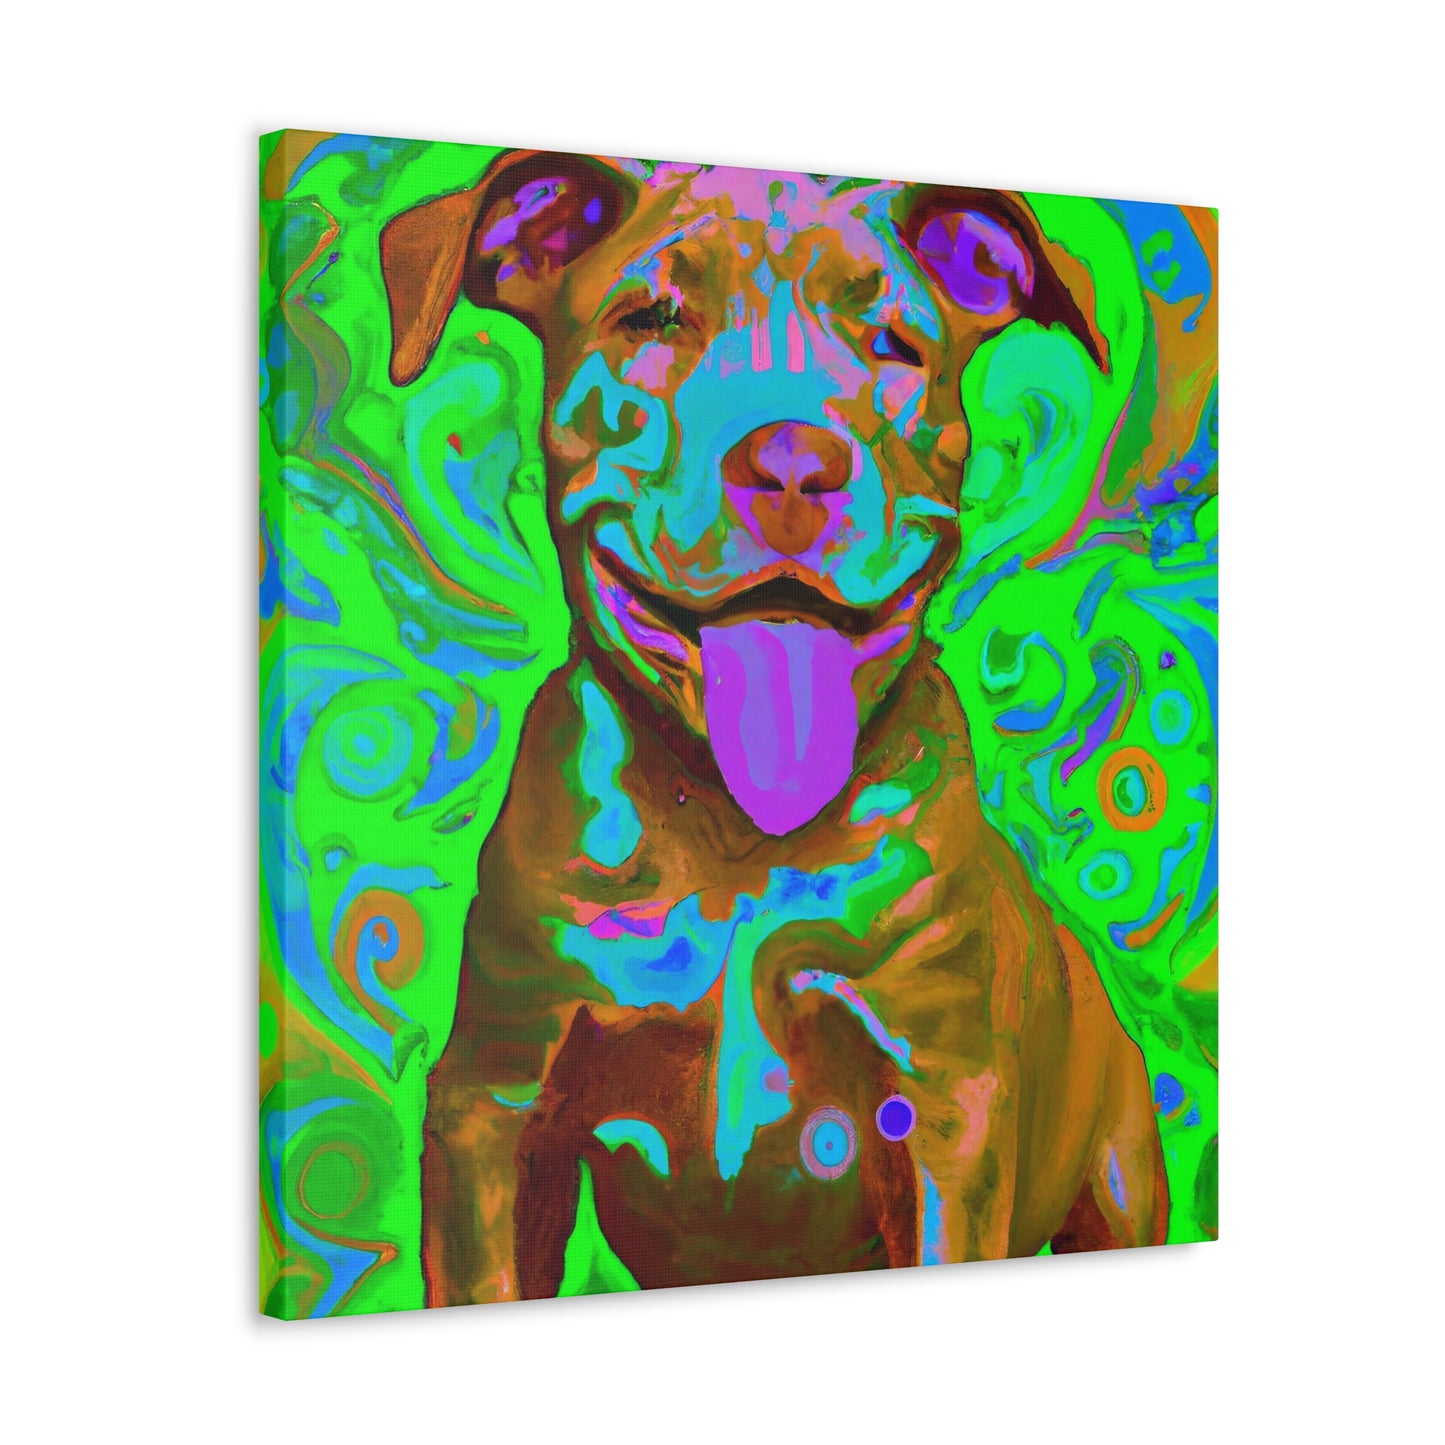 Sirano Devoreaux - Pitbull Puppy - Canvas